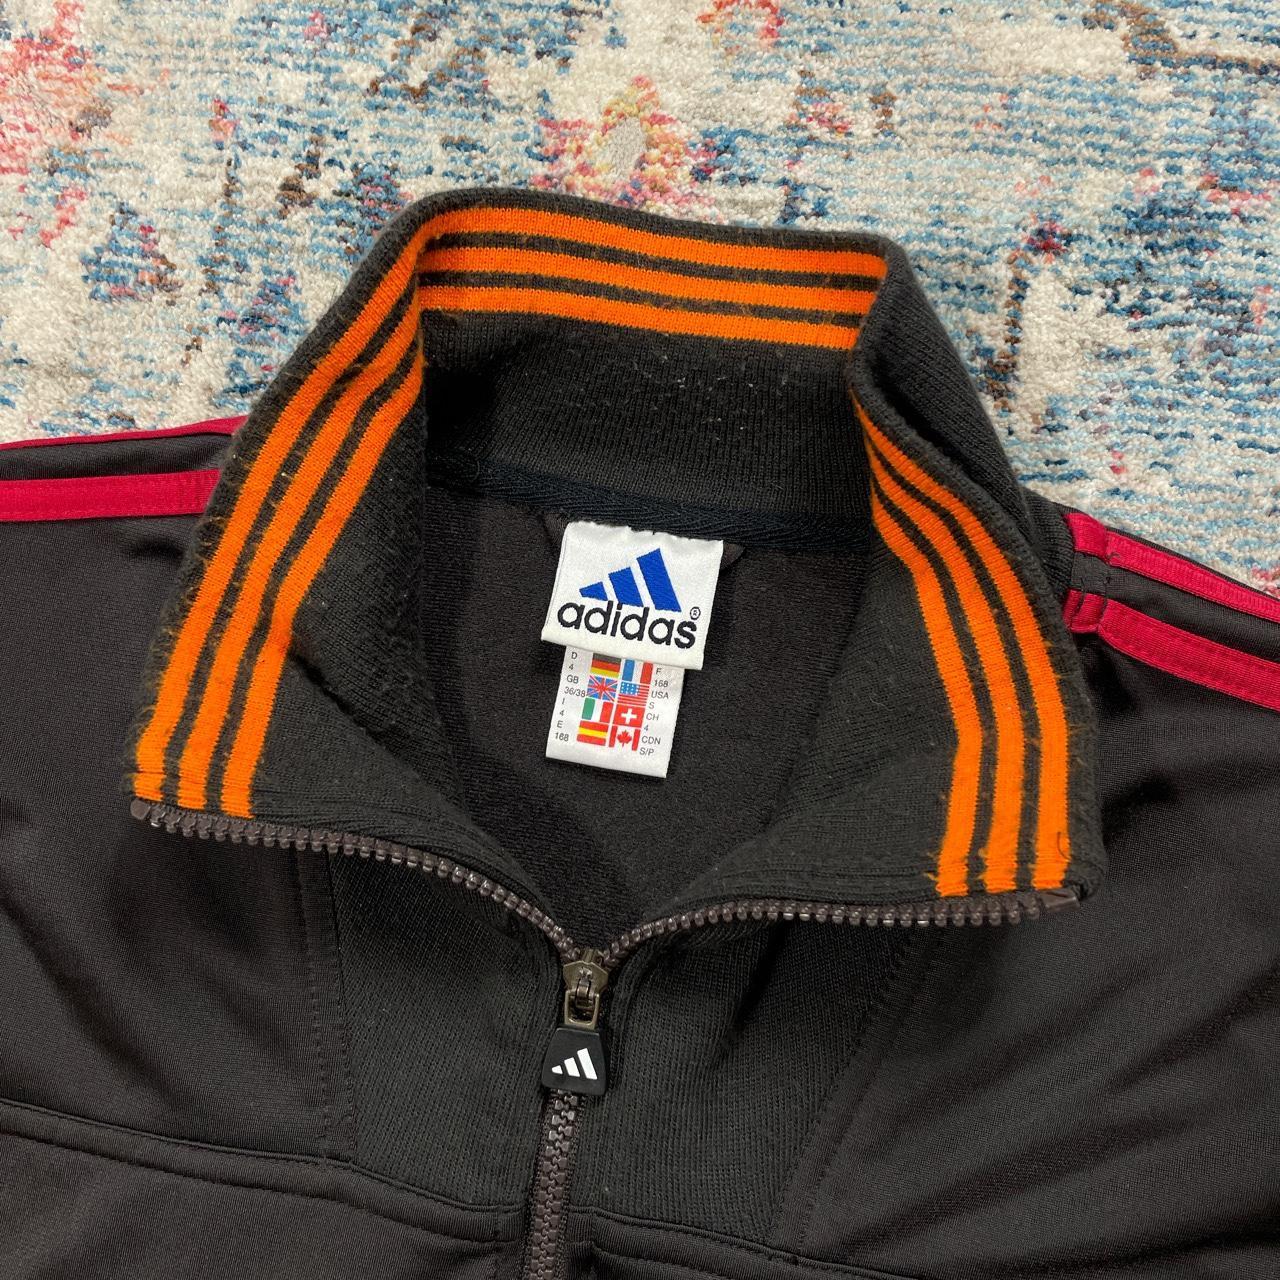 Vintage Adidas Black and Orange Jacket